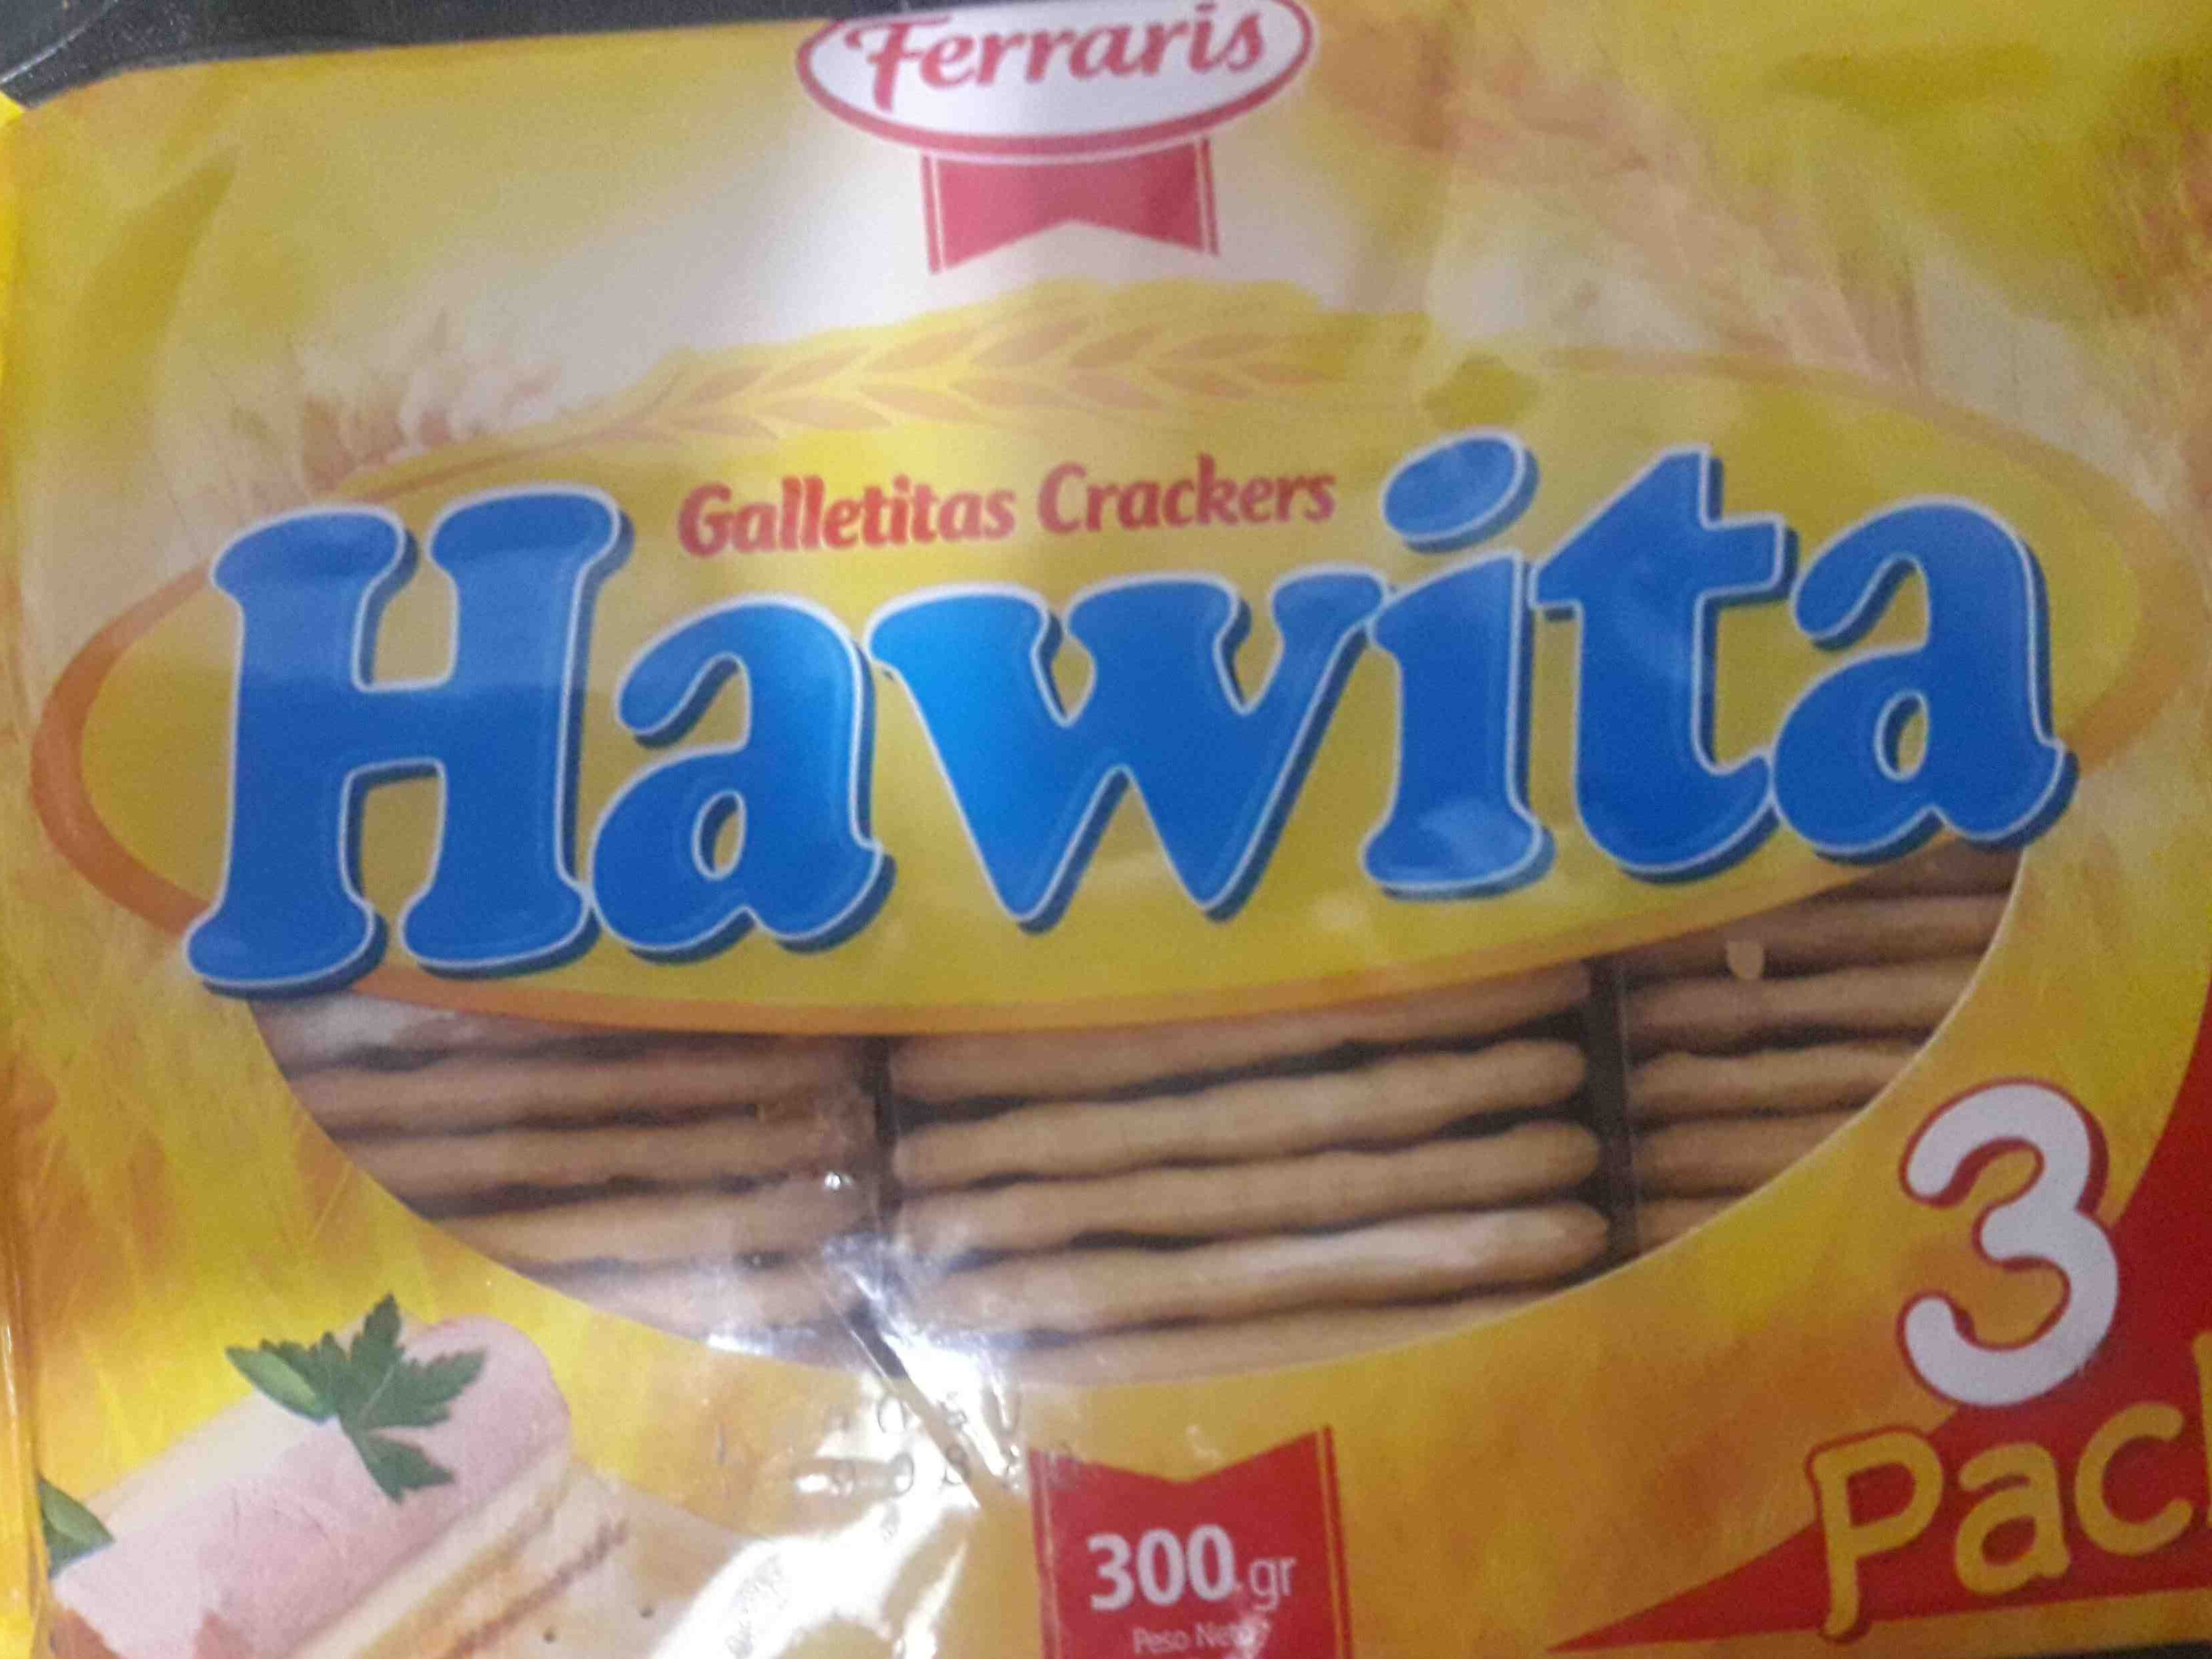 galletas hawita - Producto